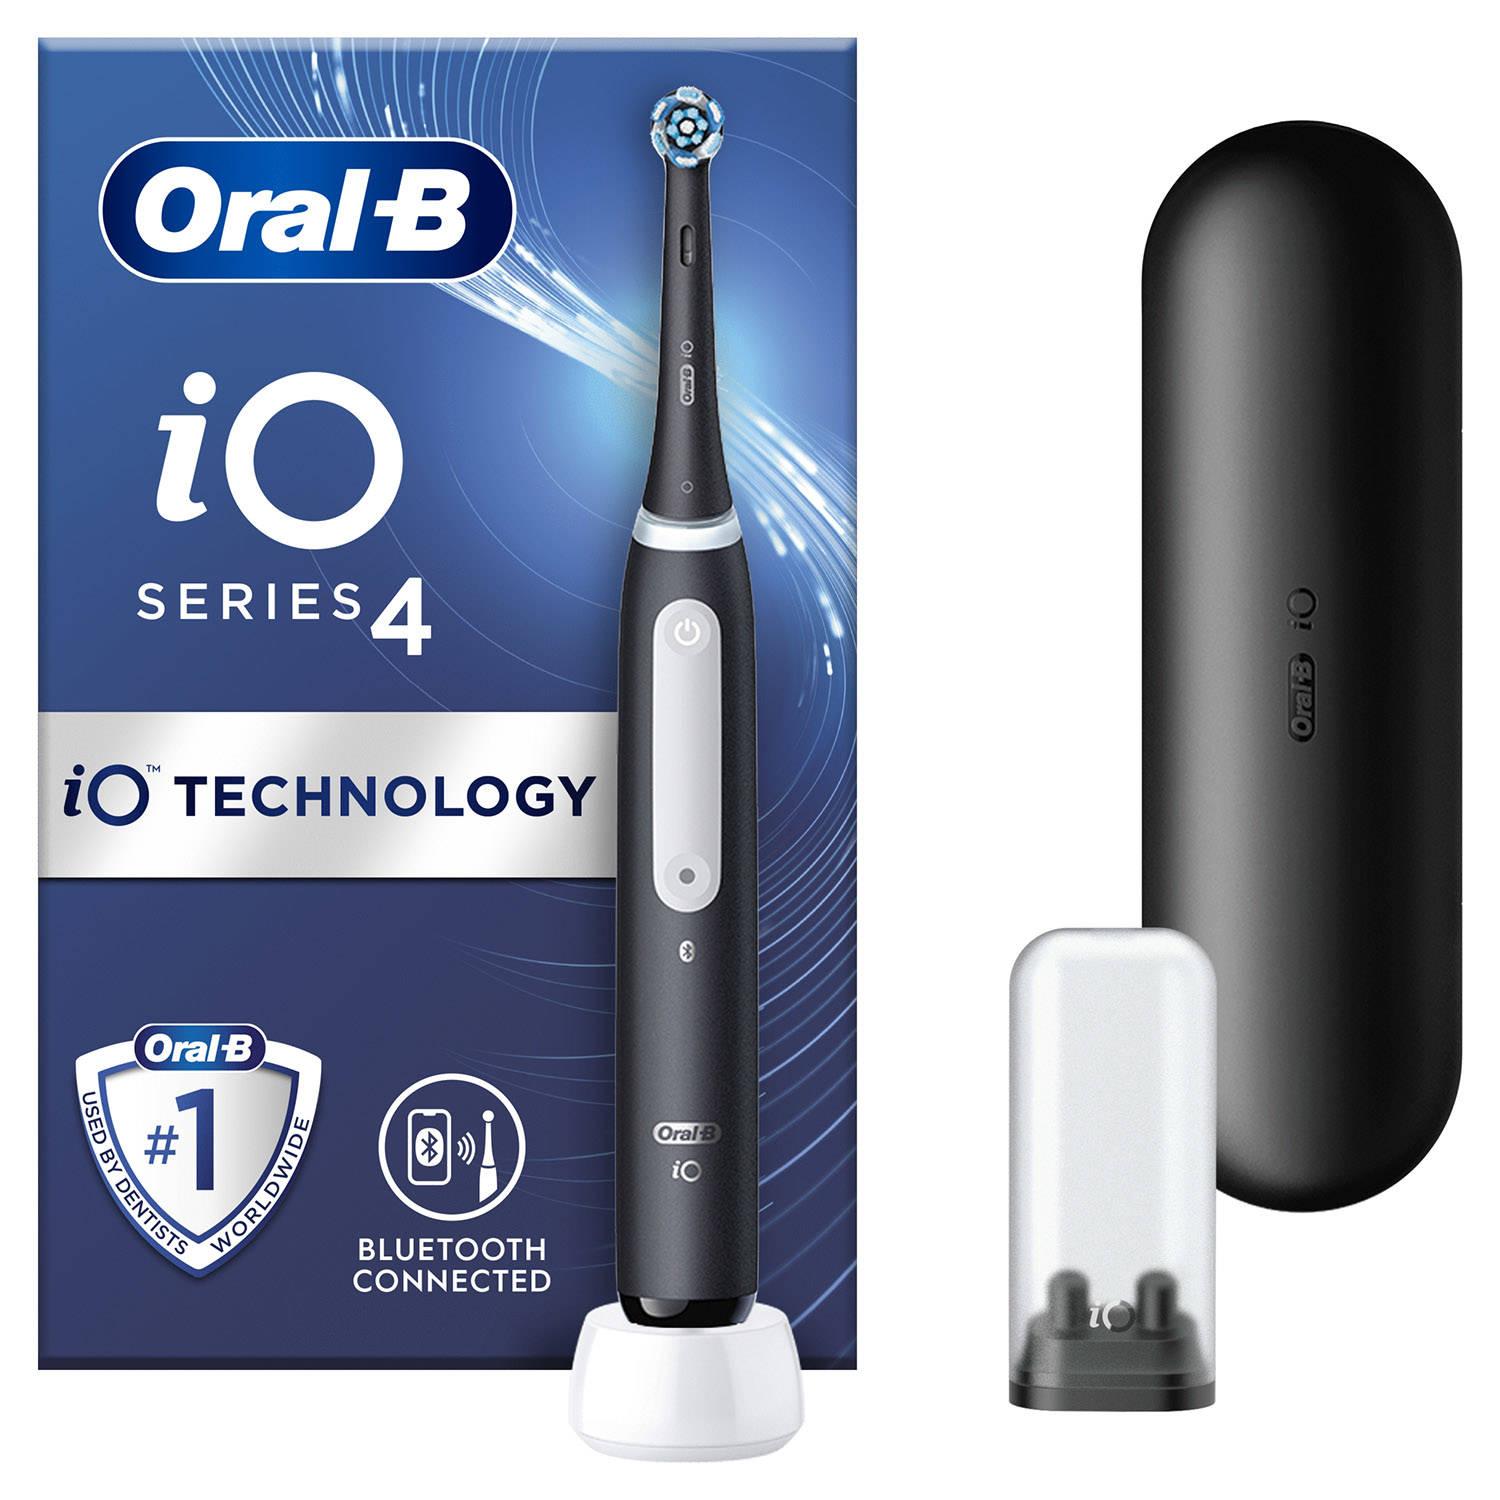 oral b travel kit